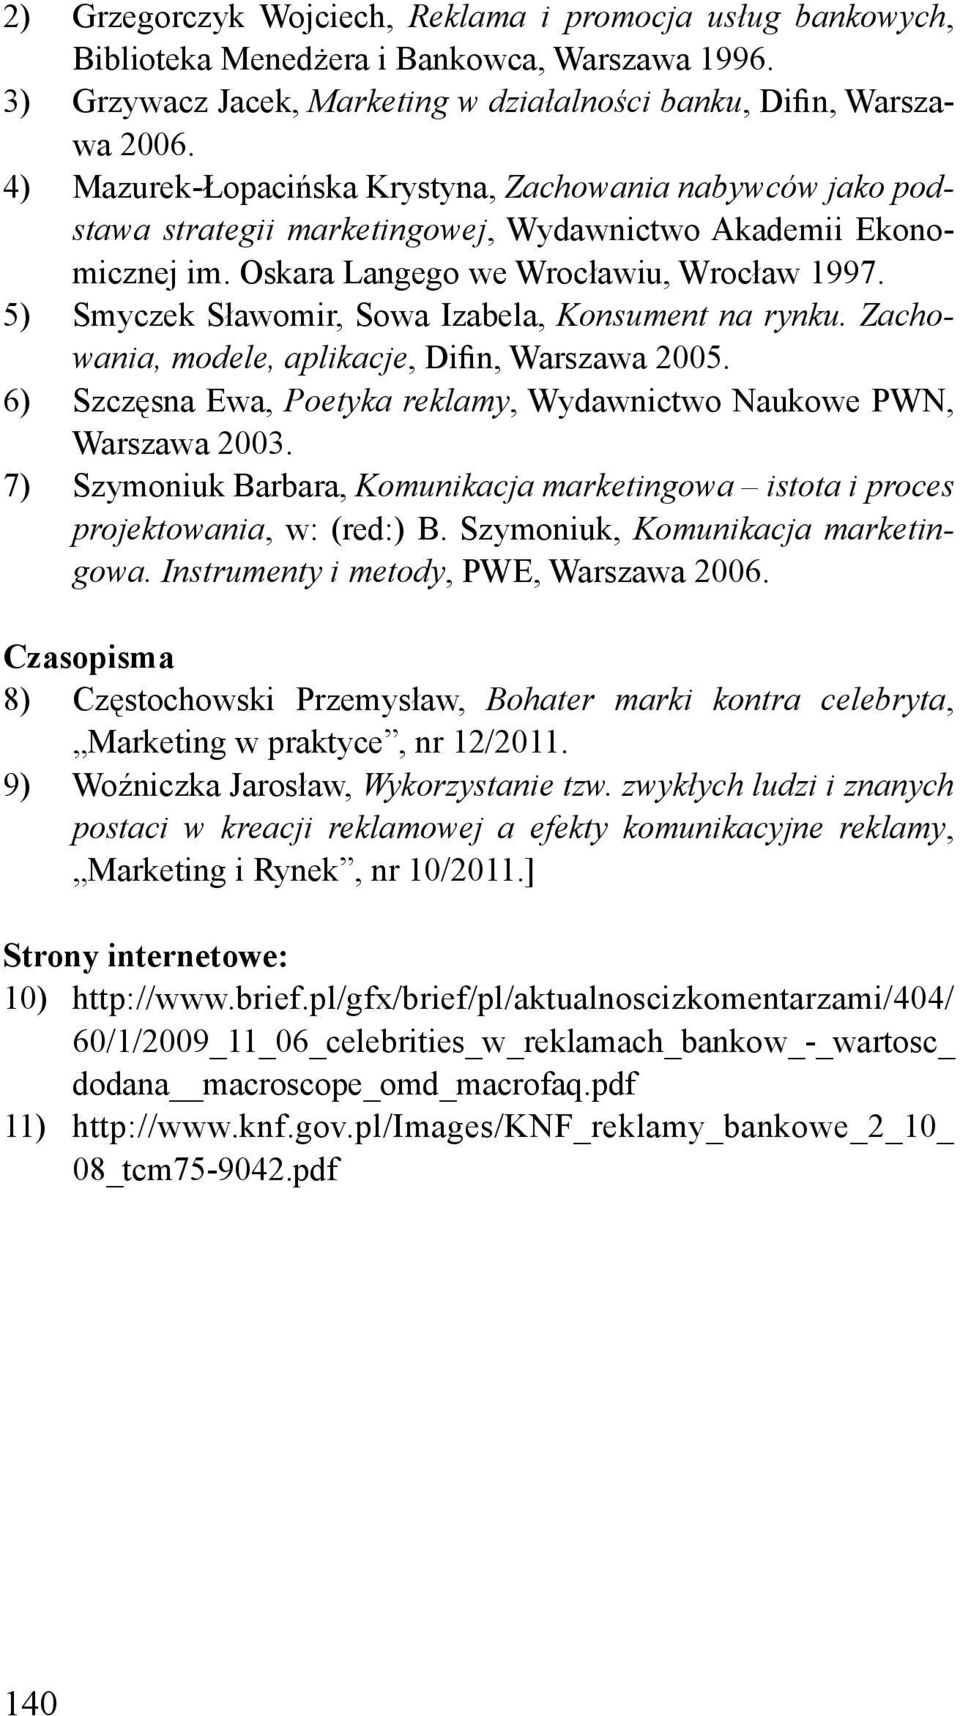 5) Smyczek Sławomir, Sowa Izabela, Konsument na rynku. Zachowania, modele, aplikacje, Difin, Warszawa 2005. 6) Szczęsna Ewa, Poetyka reklamy, Wydawnictwo Naukowe PWN, Warszawa 2003.